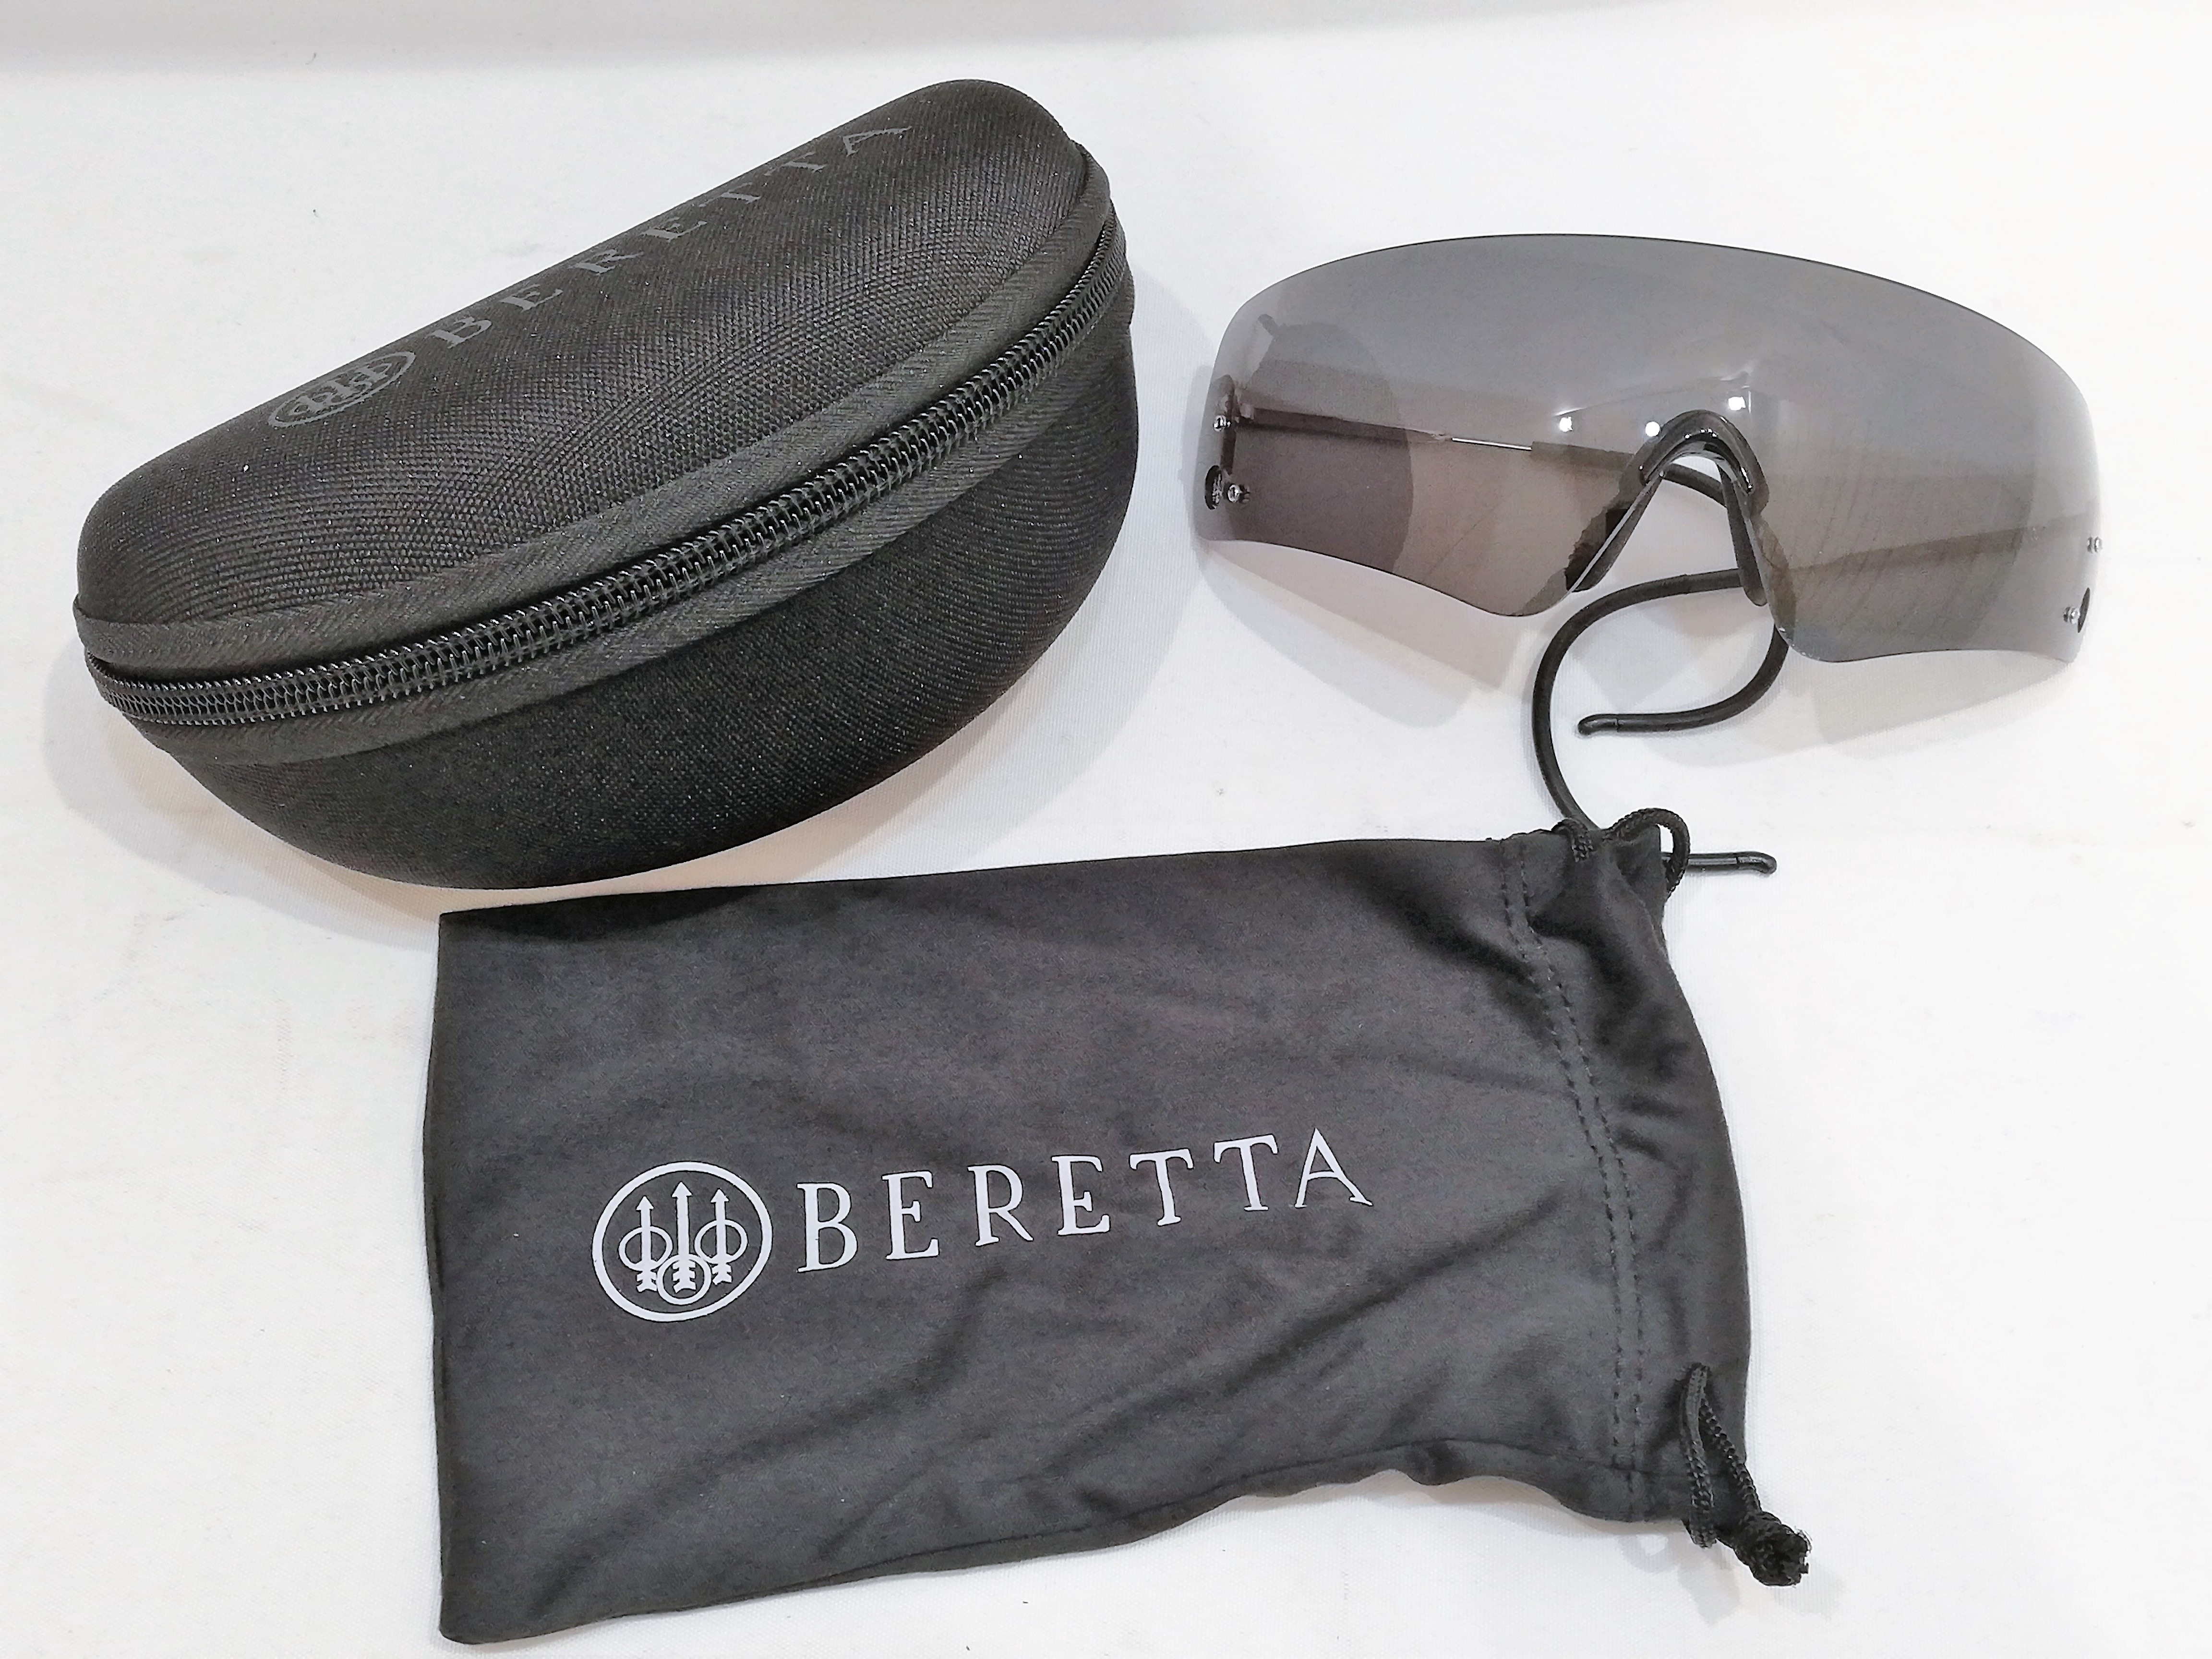 Beretta ampujanlasit + kotelo, musta                                                                          